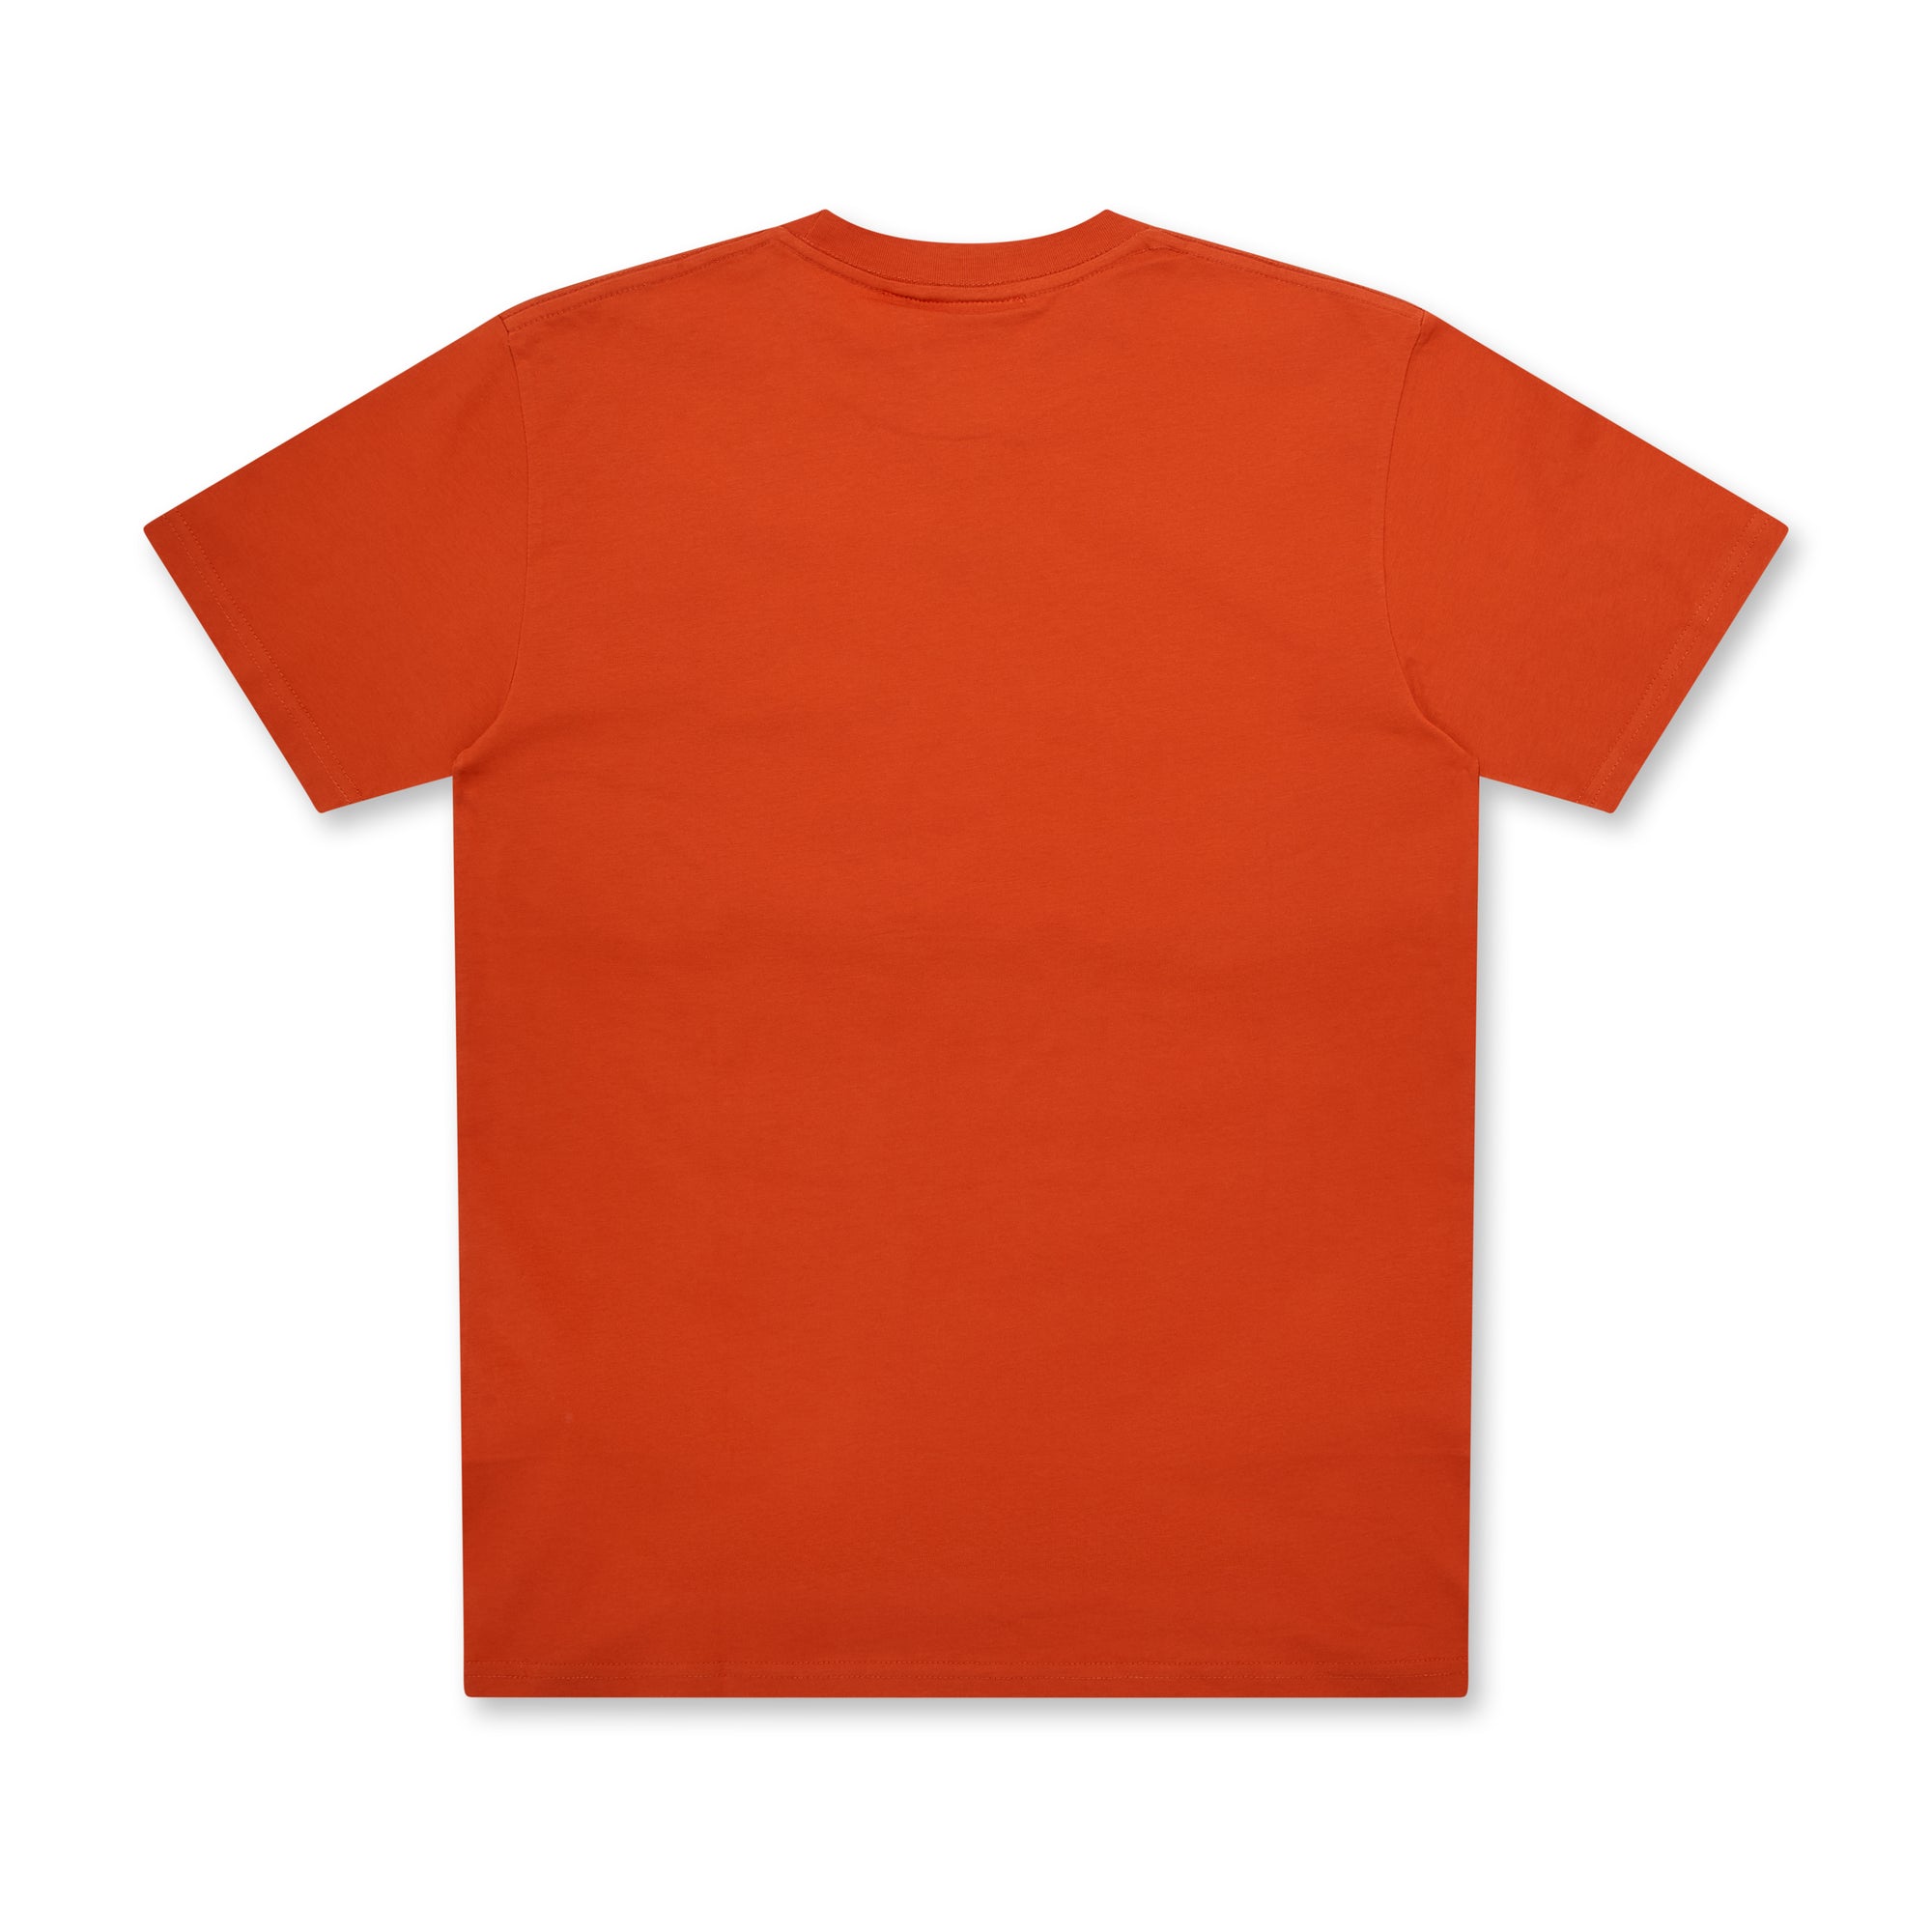 Lifeisunfair - Doodle T-Shirt - (Orange) view 2